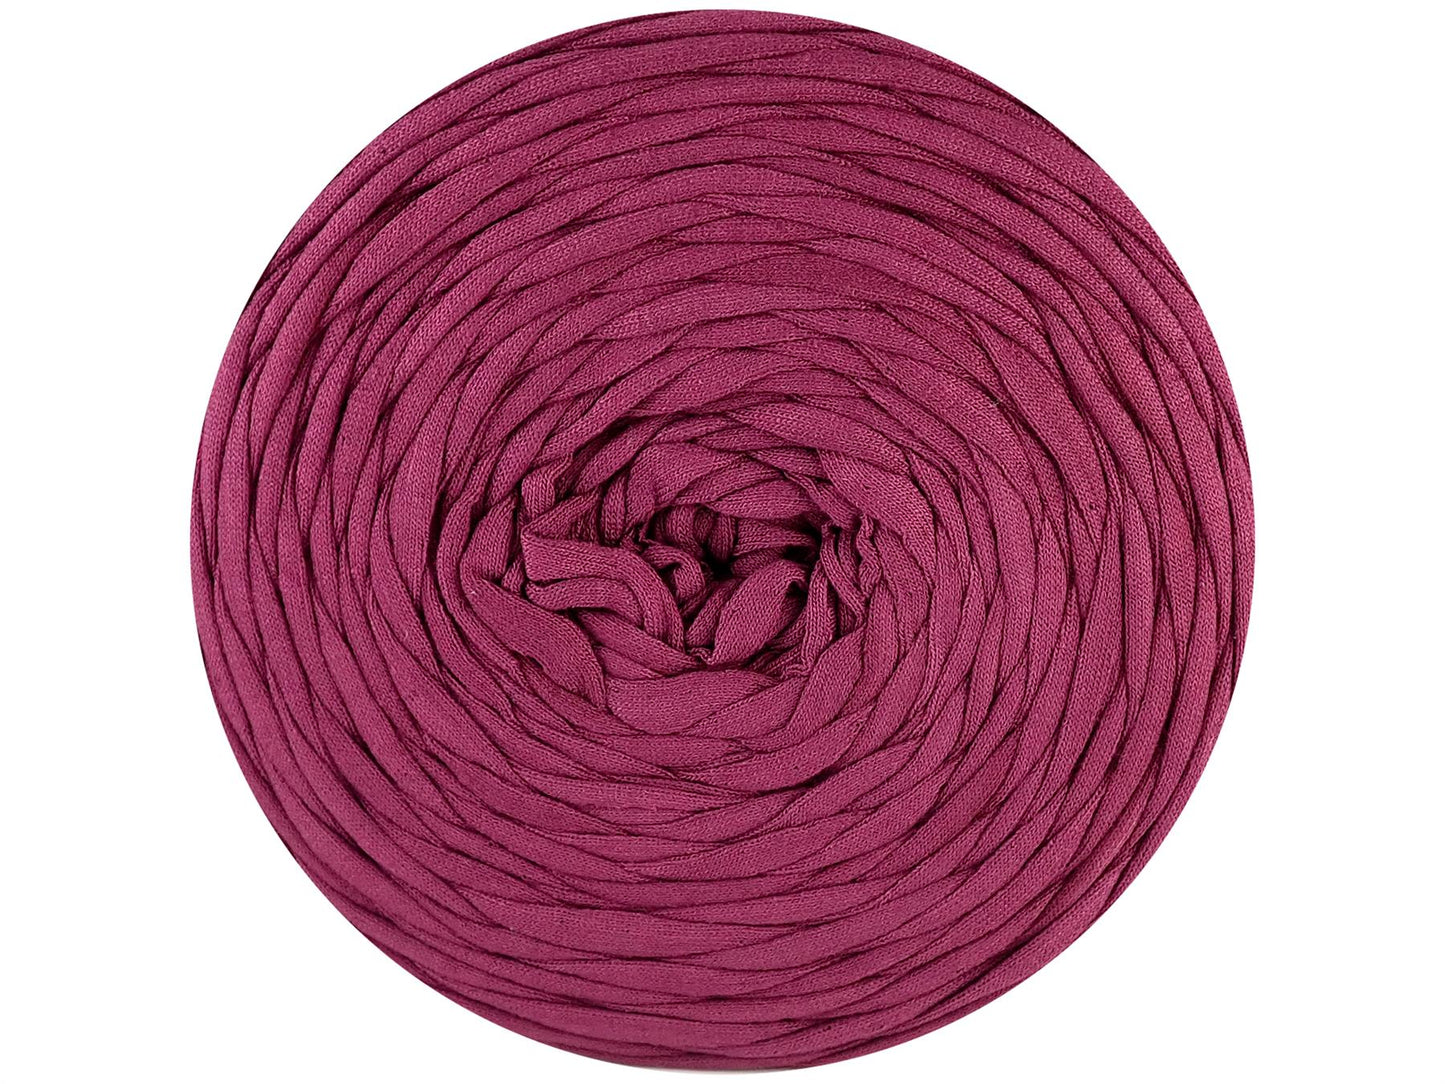 Hoooked Zpagetti Grape Purple Cotton T-Shirt Yarn - 120M 700g